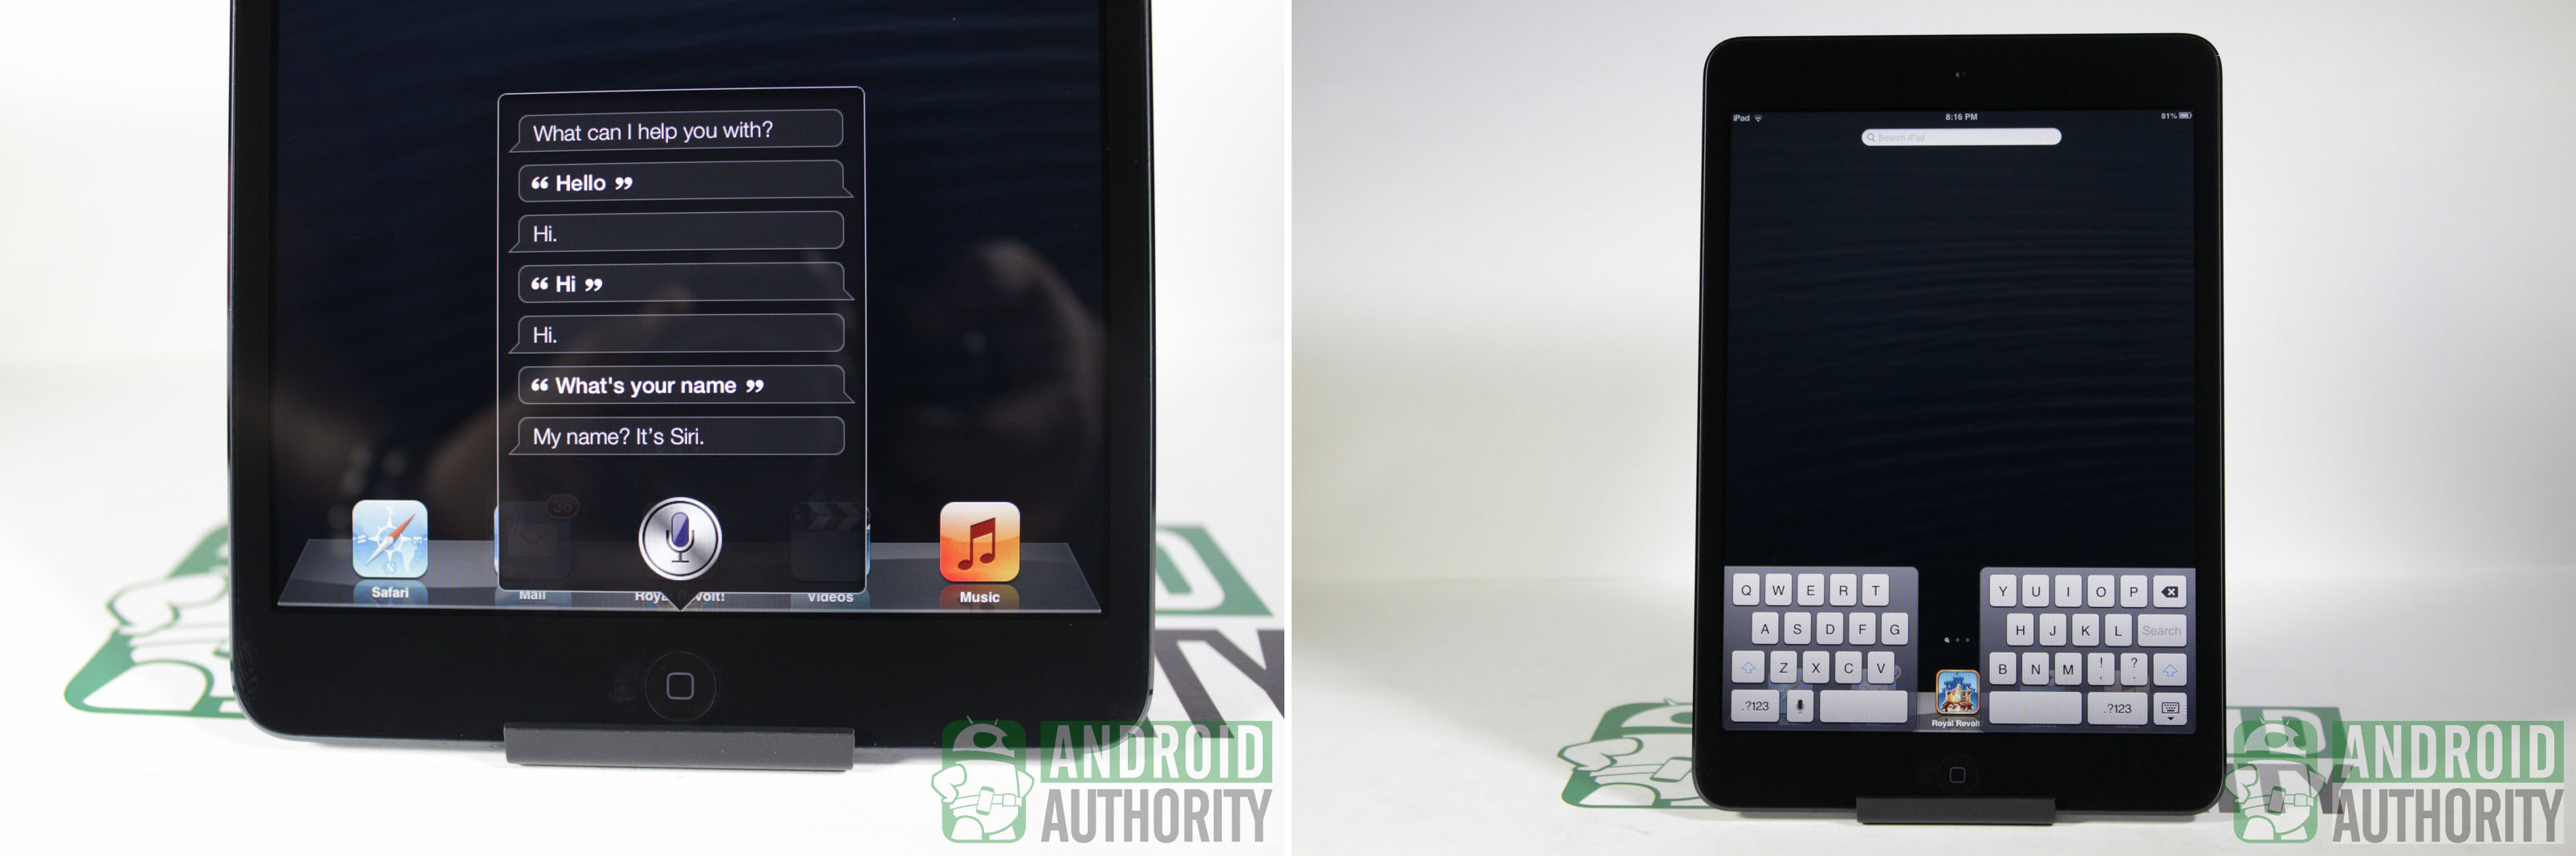 Apple iPad mini vs Amazon Kindle Fire HD